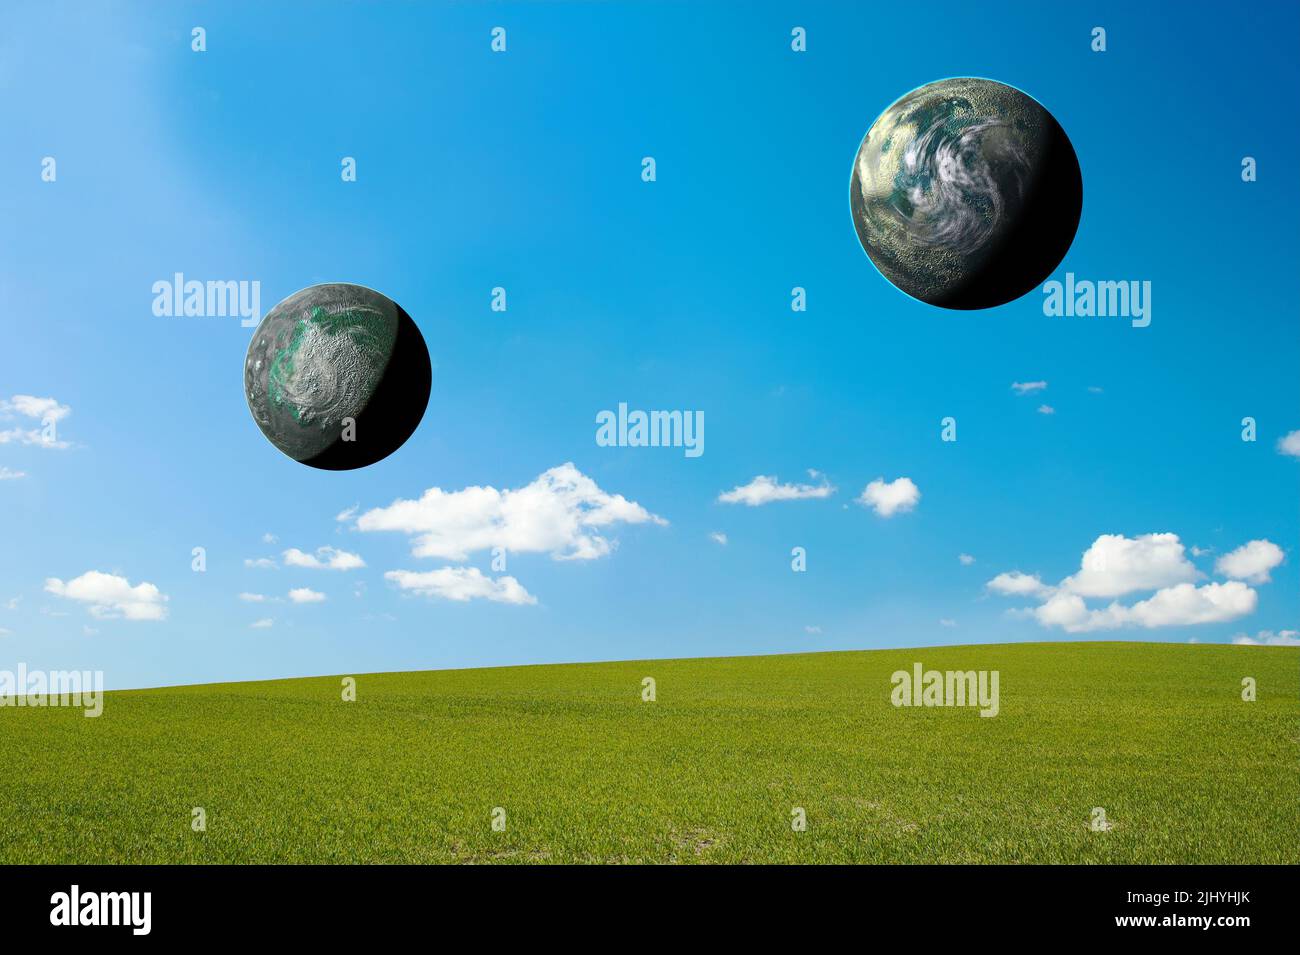 Zwei 3D Sonnenplaneten, die den Welt- oder Erdtag symbolisieren, universelles Ökosystem in abgelegener Landschaft, Feld oder Wiese. Astrophysik oder himmlische Studie der Wohnung Stockfoto